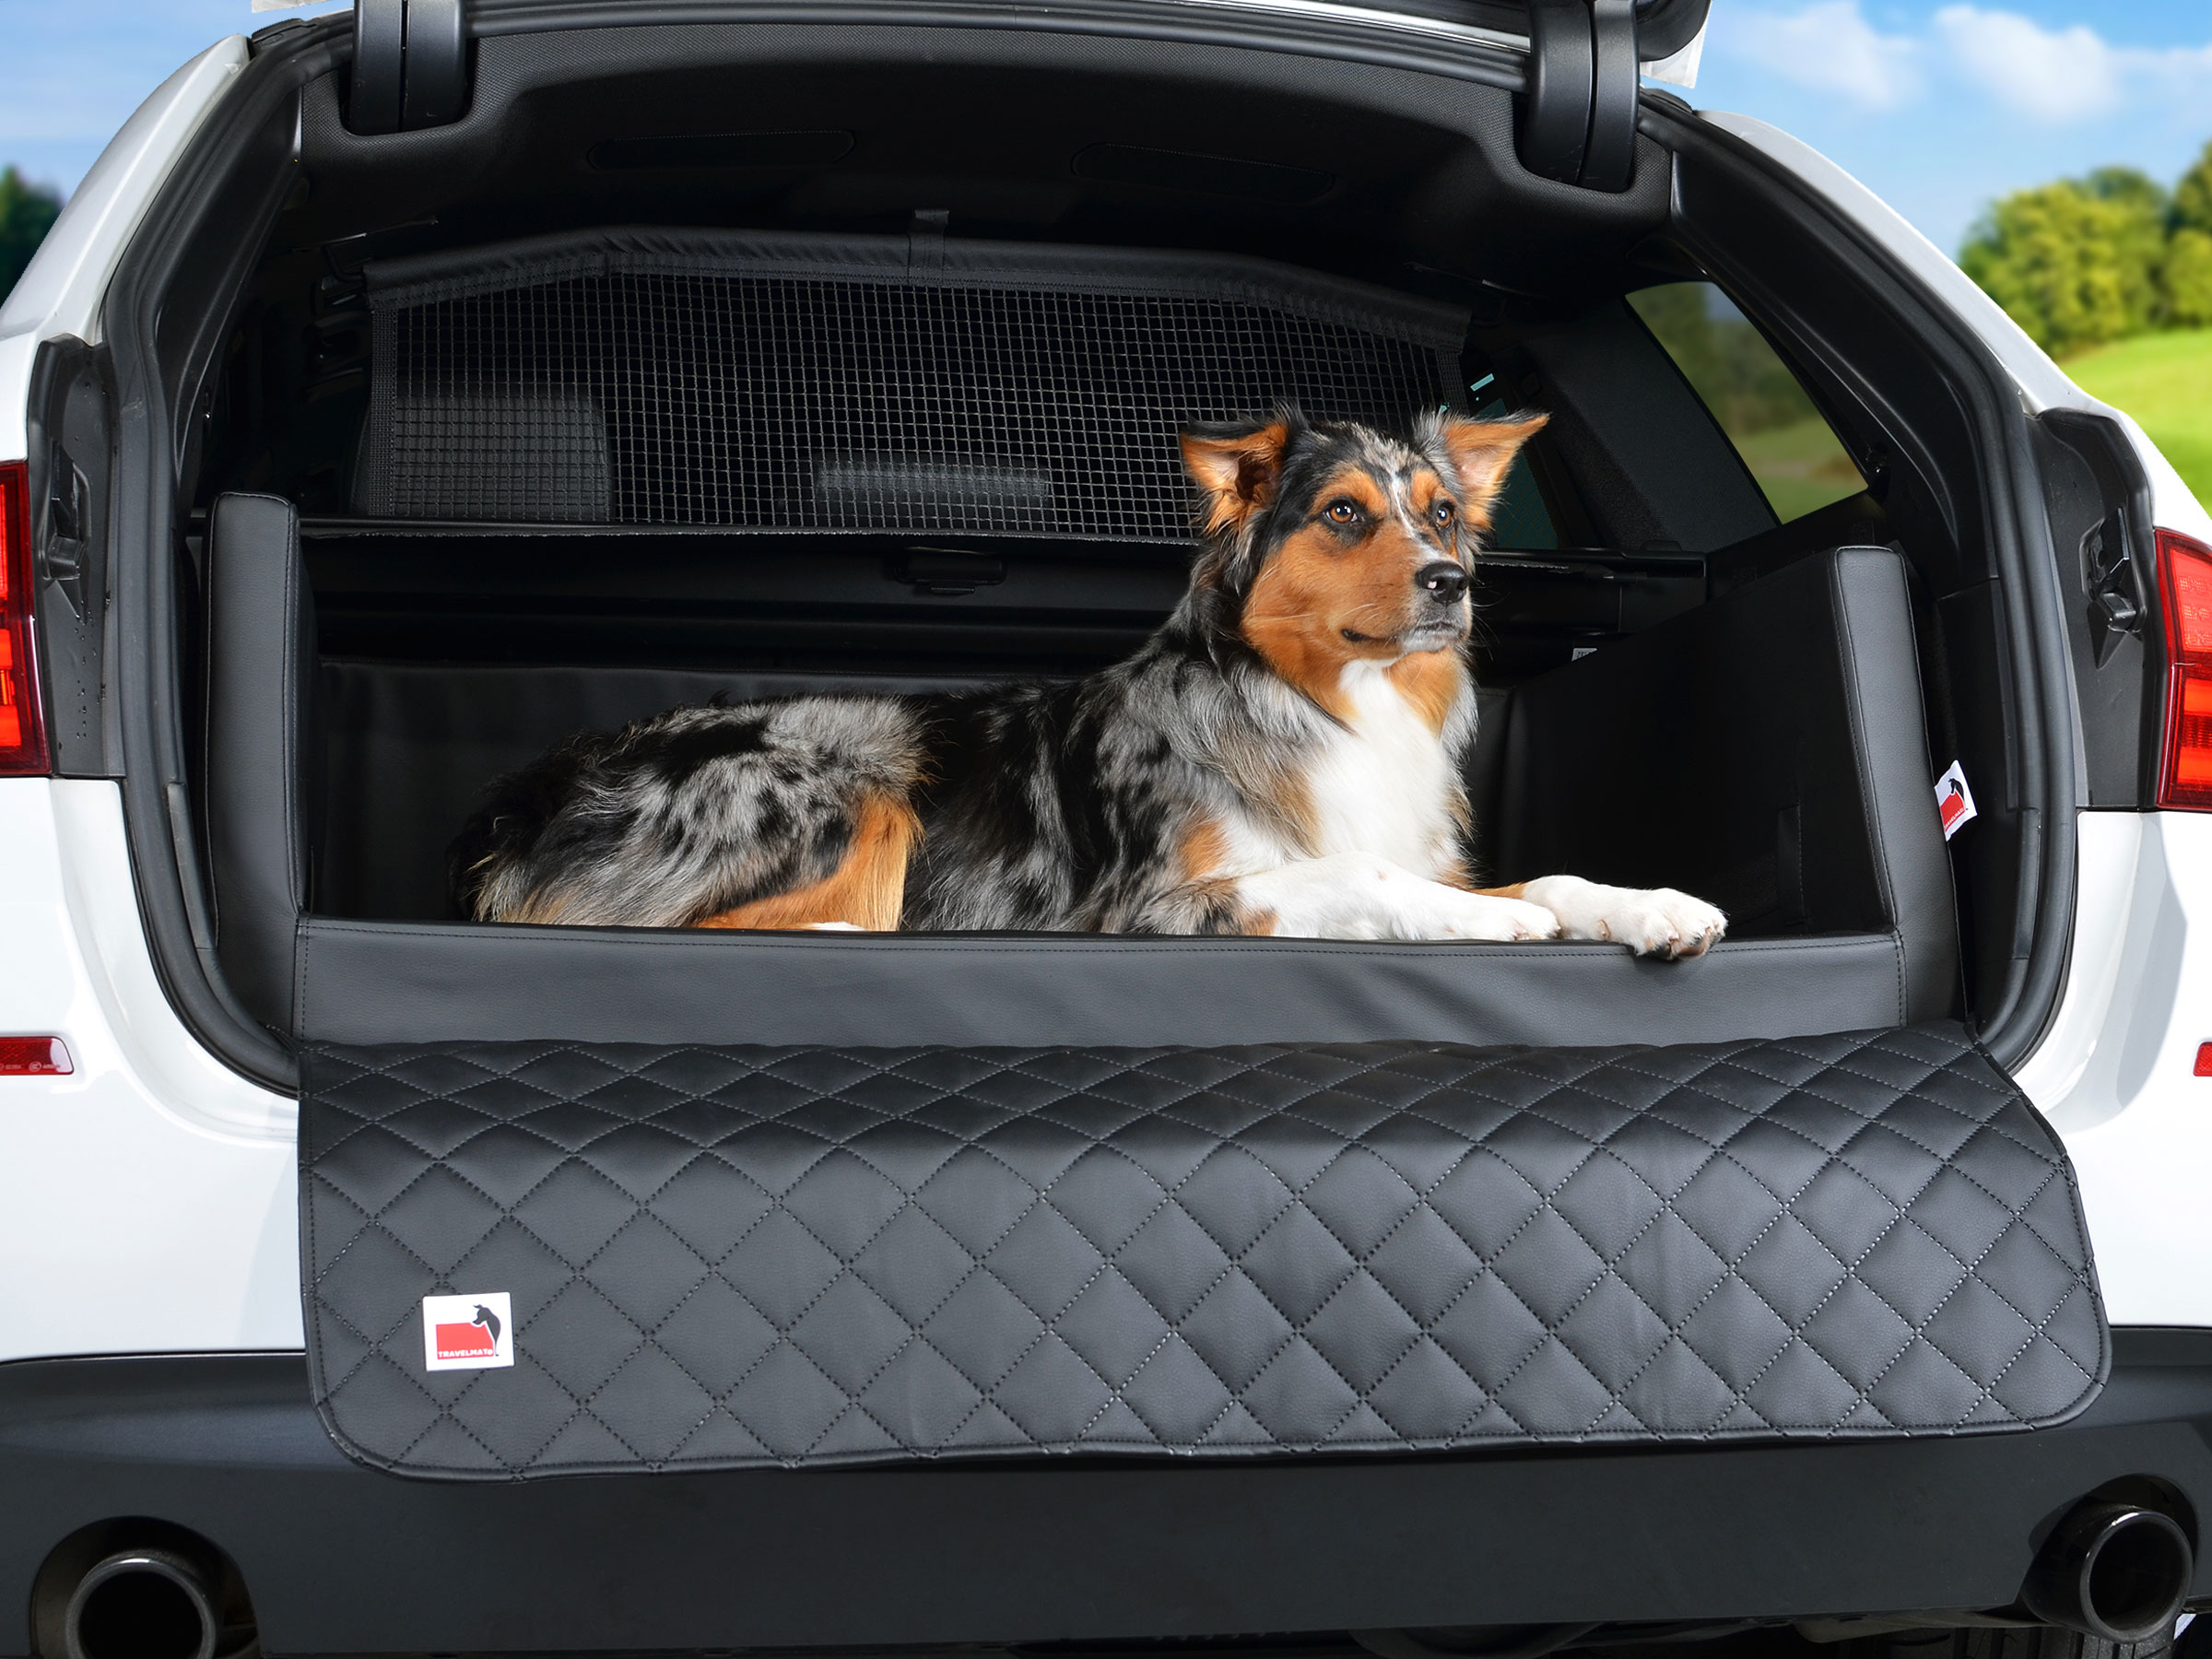 TIERVITAL NATURPRODUKTE - Hunde Auto Kofferraumbett Smart